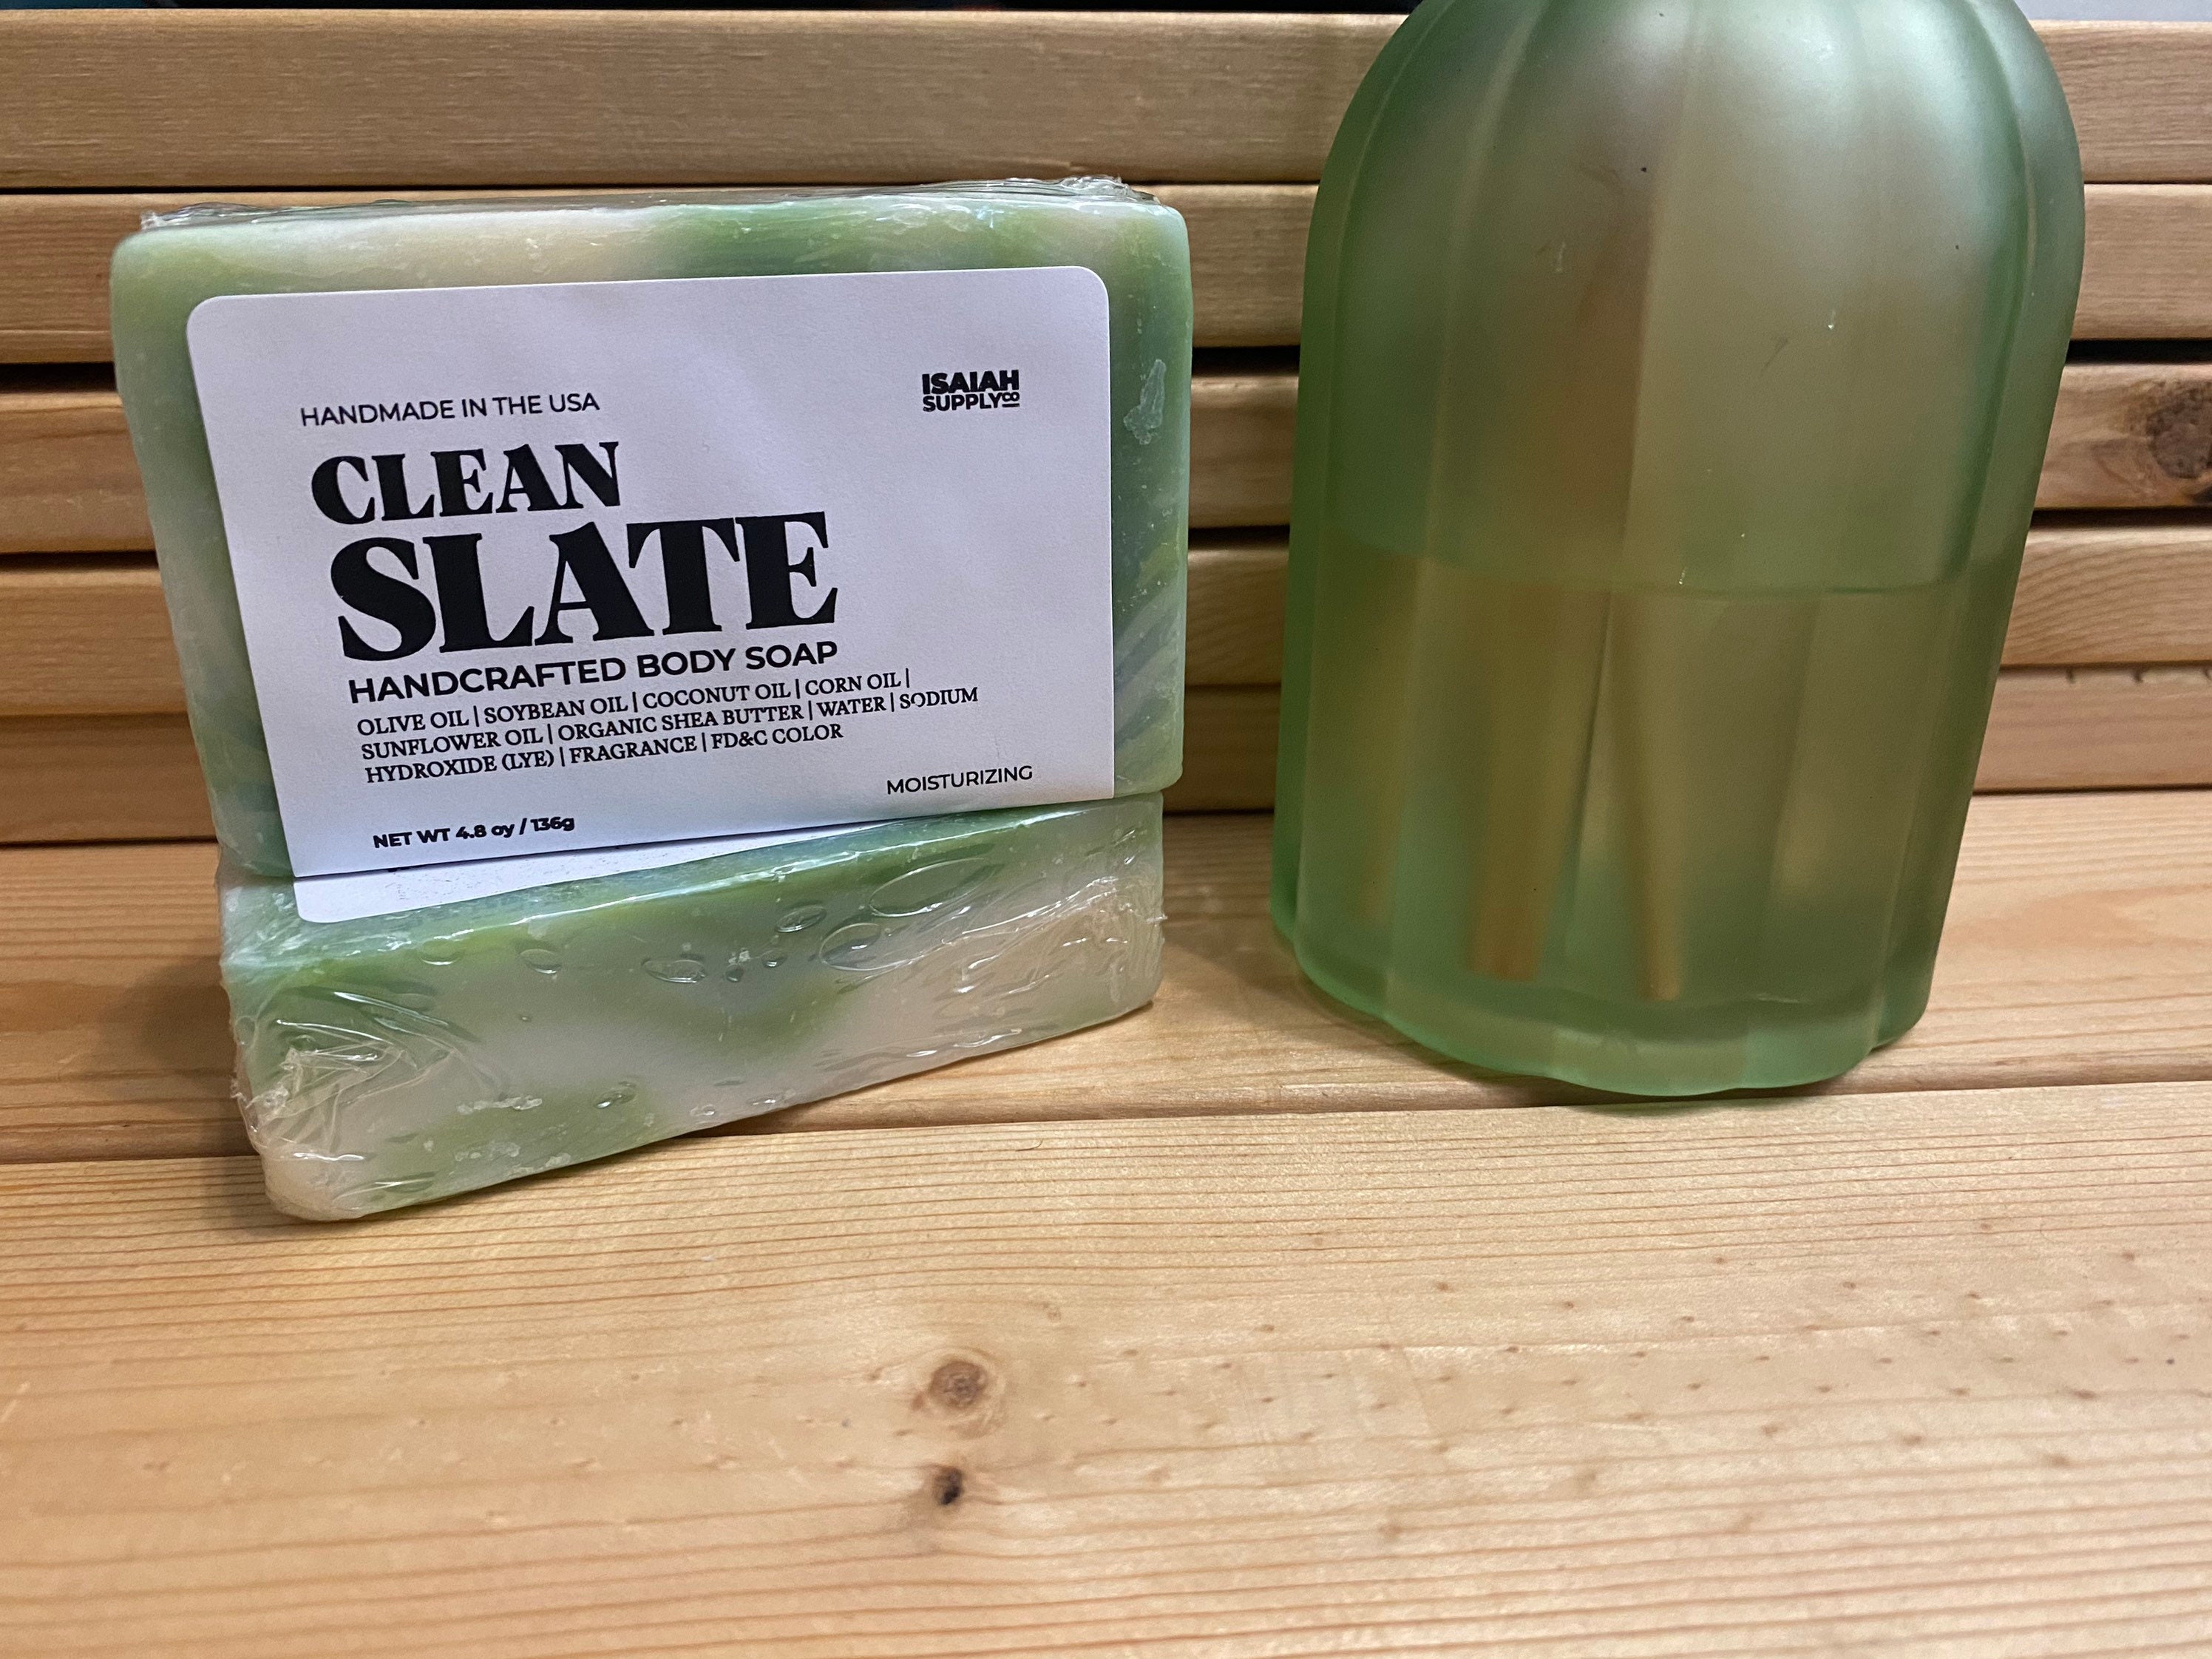 Blestaaa Essentialss Bar Aloe Vera Soap Base, For Bathing